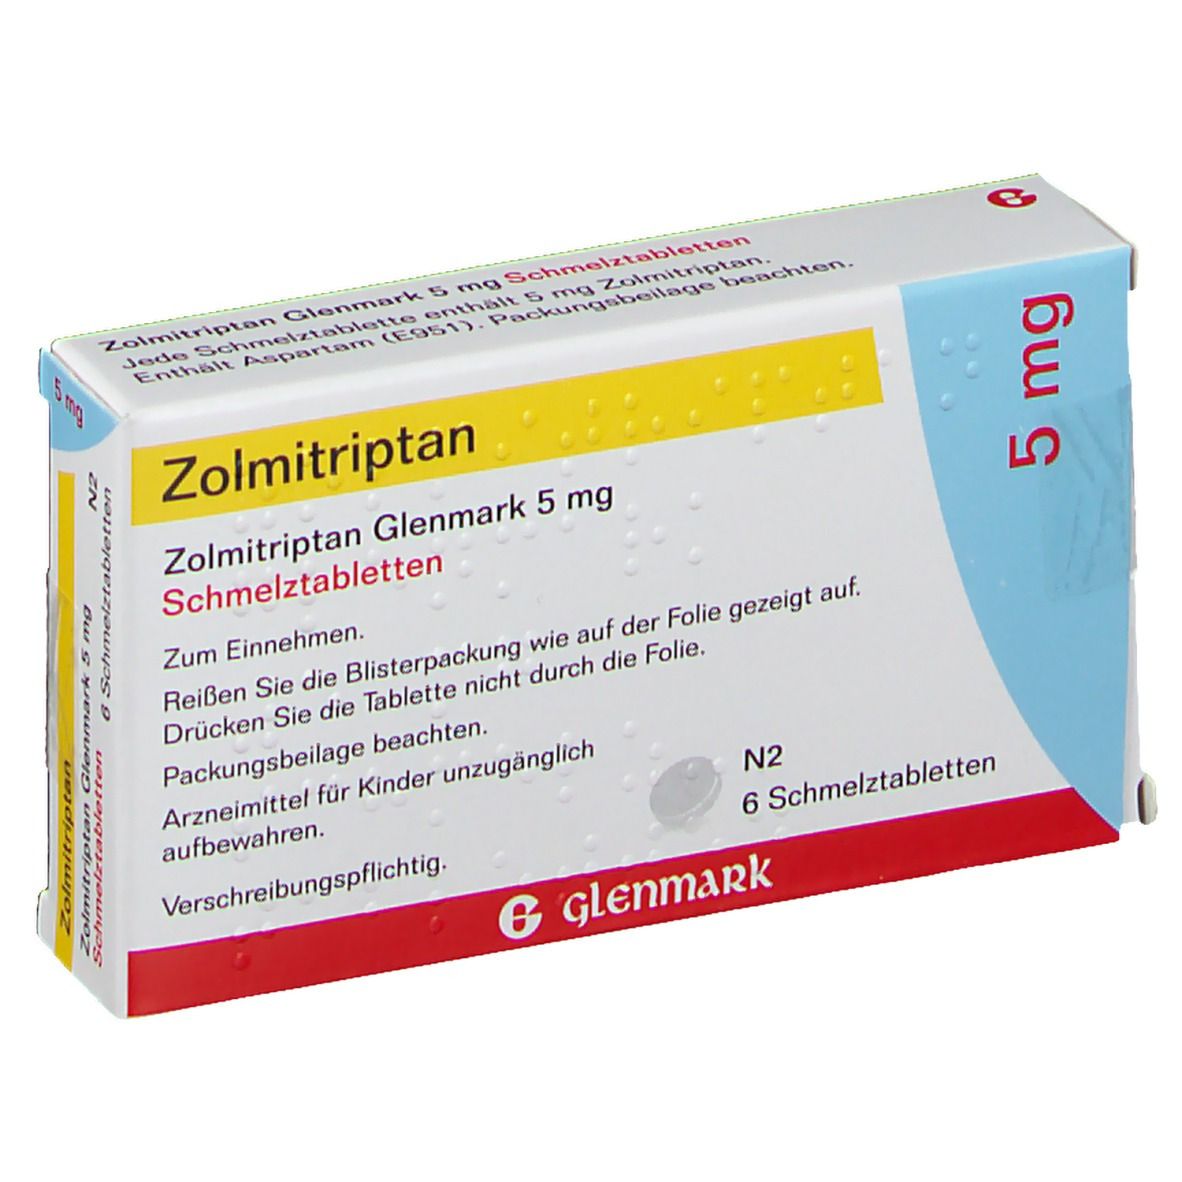 Zolmitriptan Glenmark 5 mg